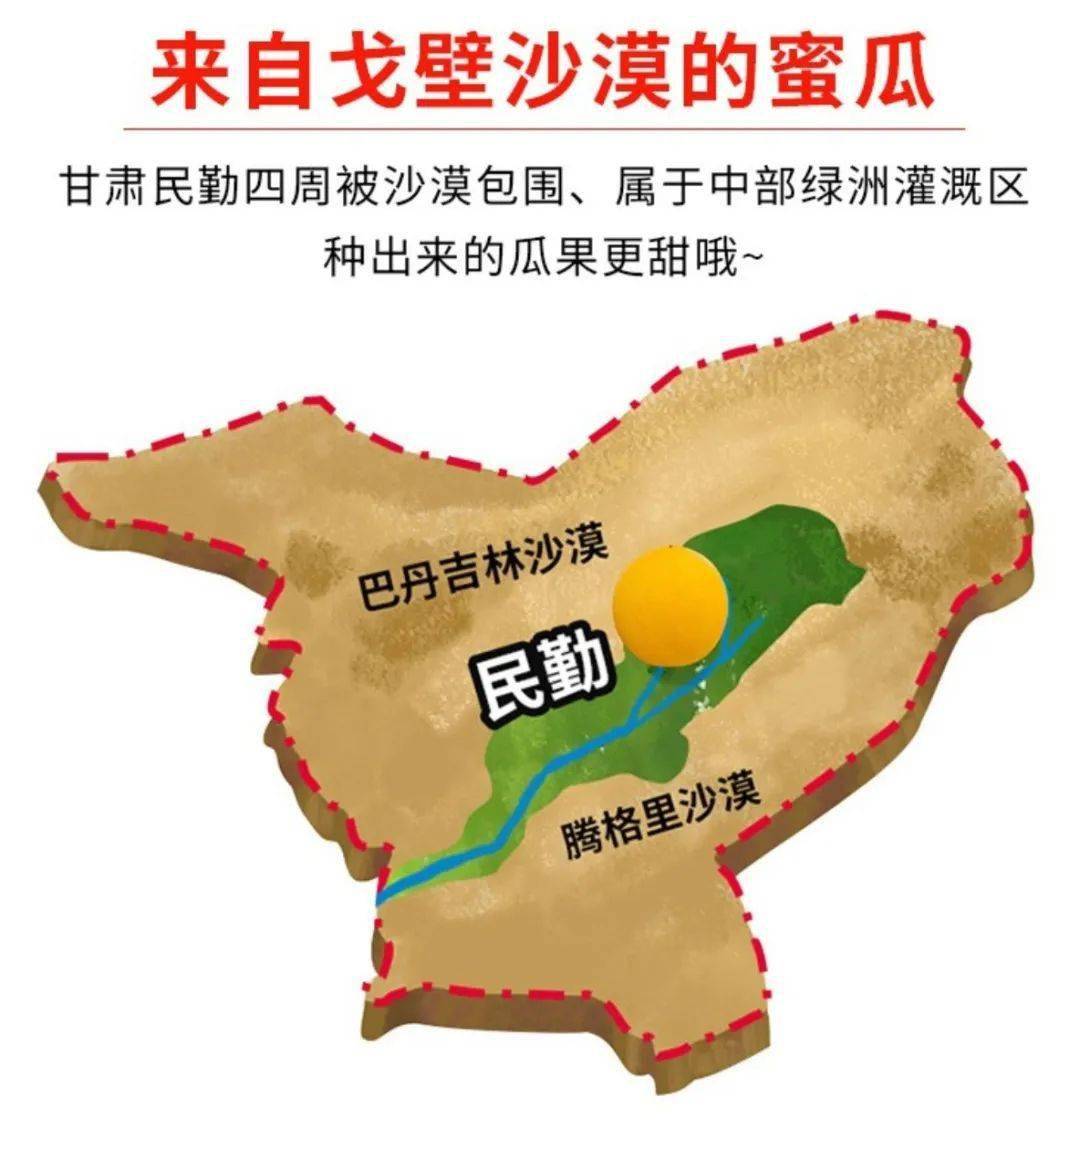 民勤县西渠镇地图图片